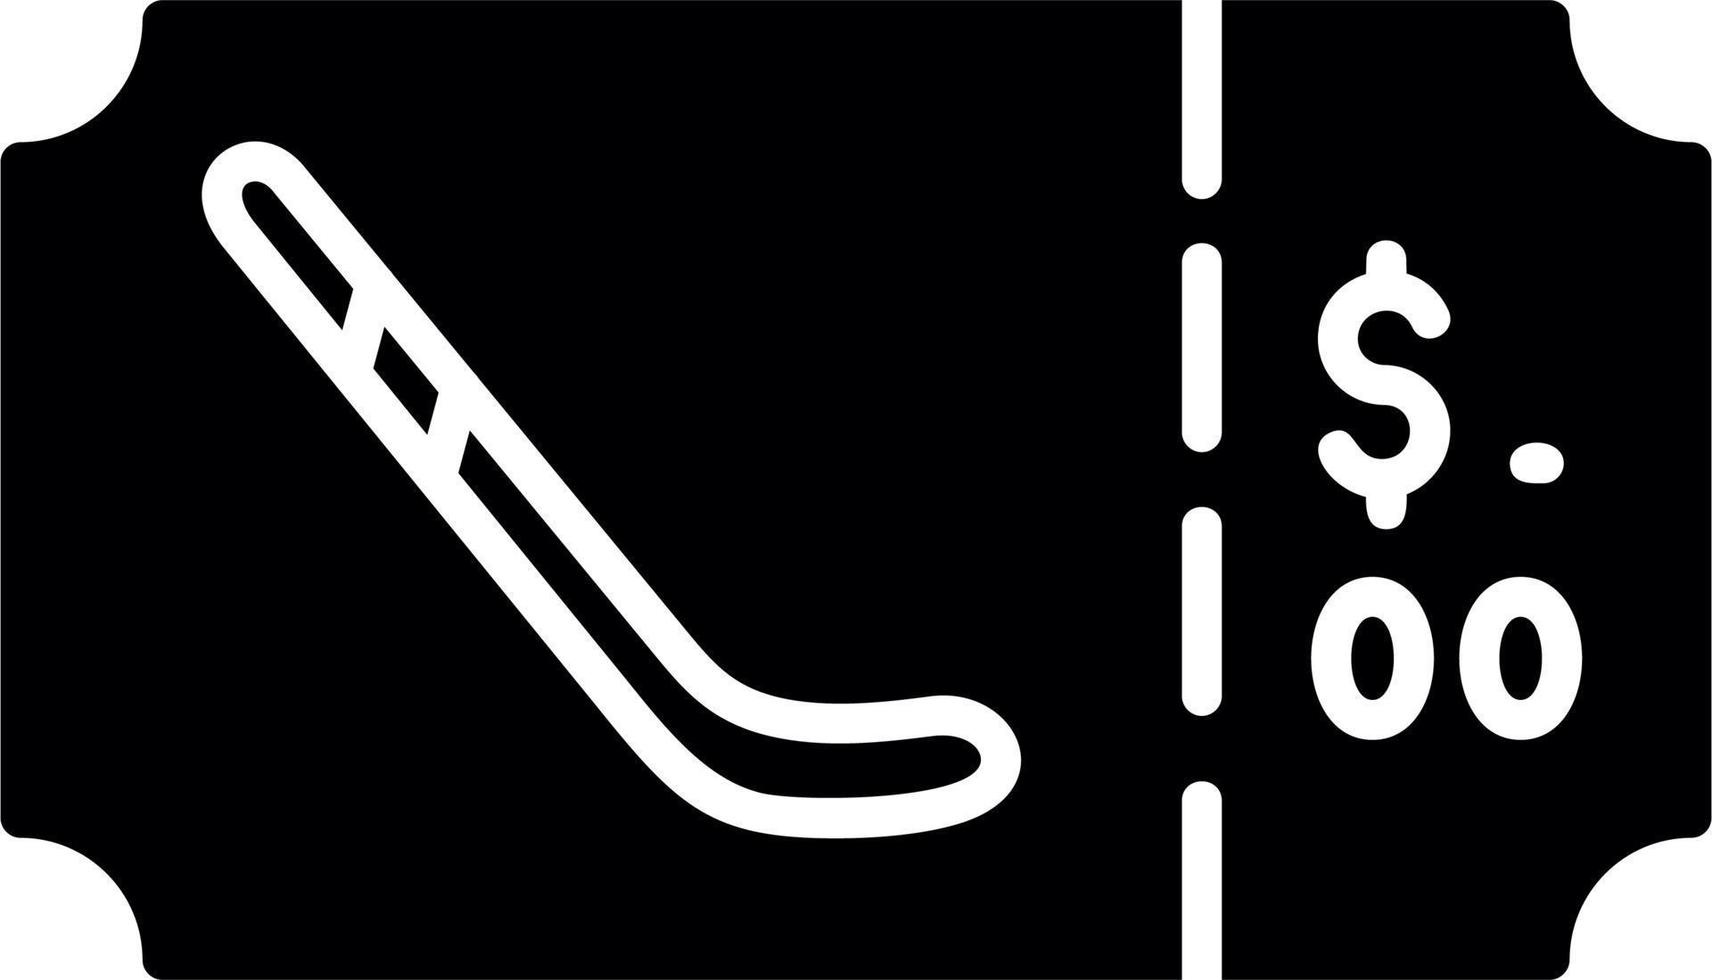 hockey biglietto vettore icona